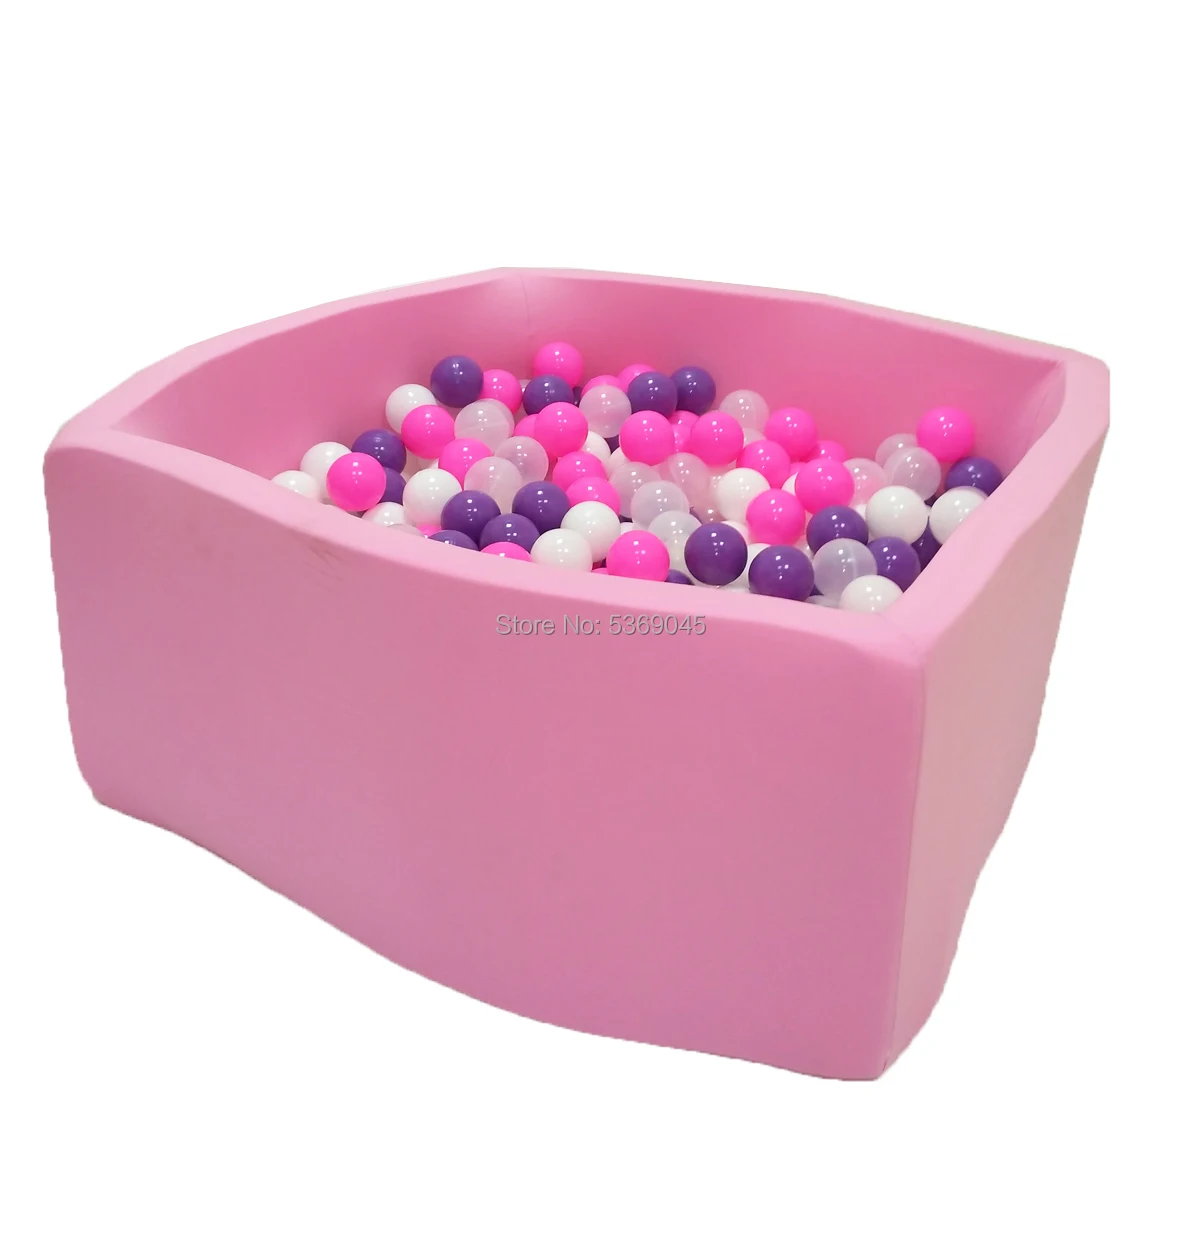 СУХОЙ БАССЕЙН "Фиолетовые пузыри Квадро" розовый выс. h40см с 200 шариками(розовый, белый, фиолетовый, прозрачный